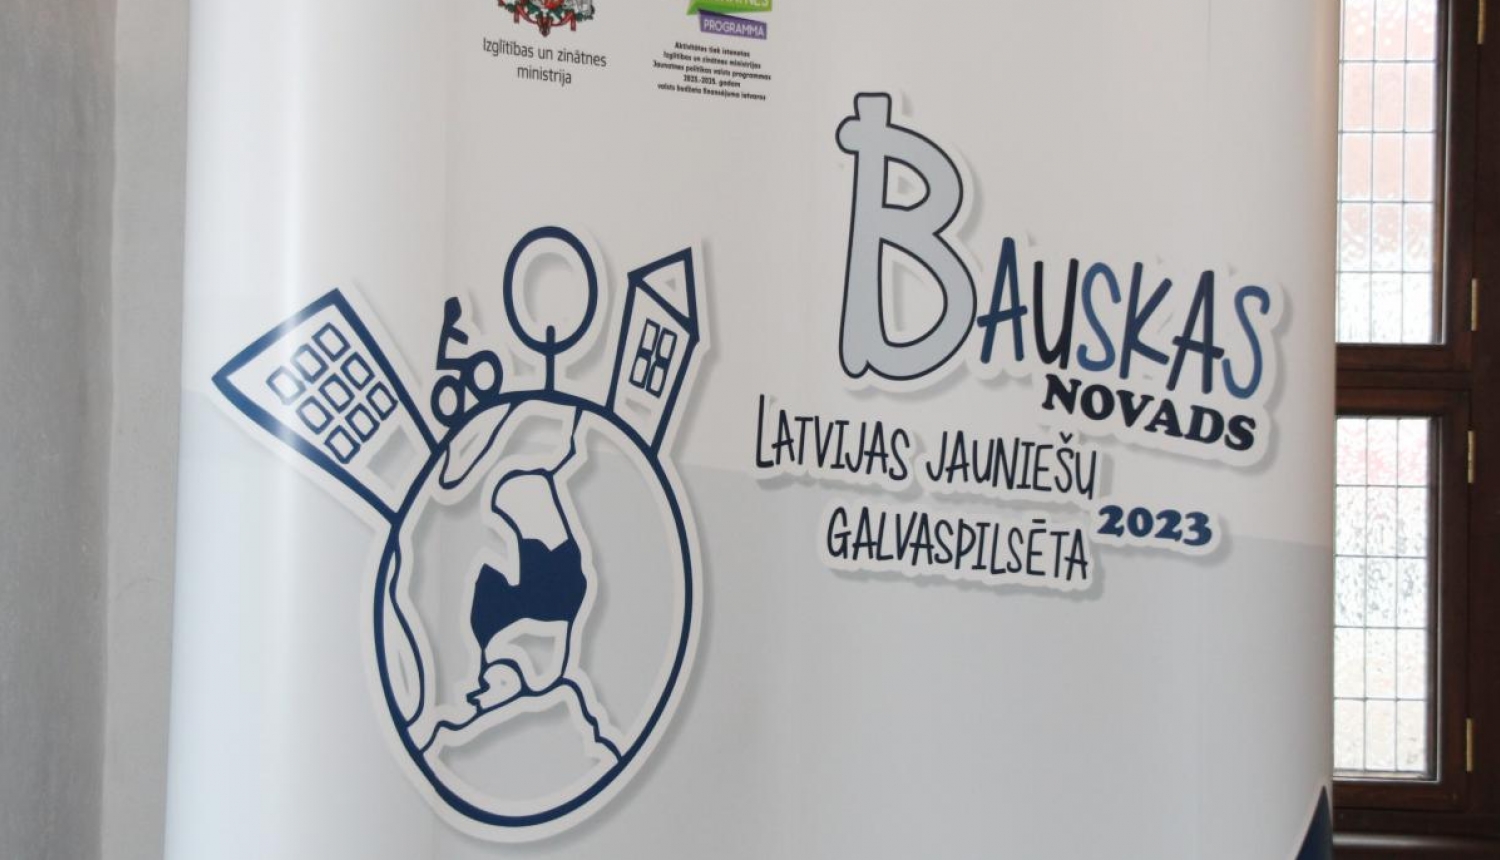 Informē par «Bauskas novads - Latvijas Jauniešu galvaspilsēta 2023» plānotajām aktivitātēm